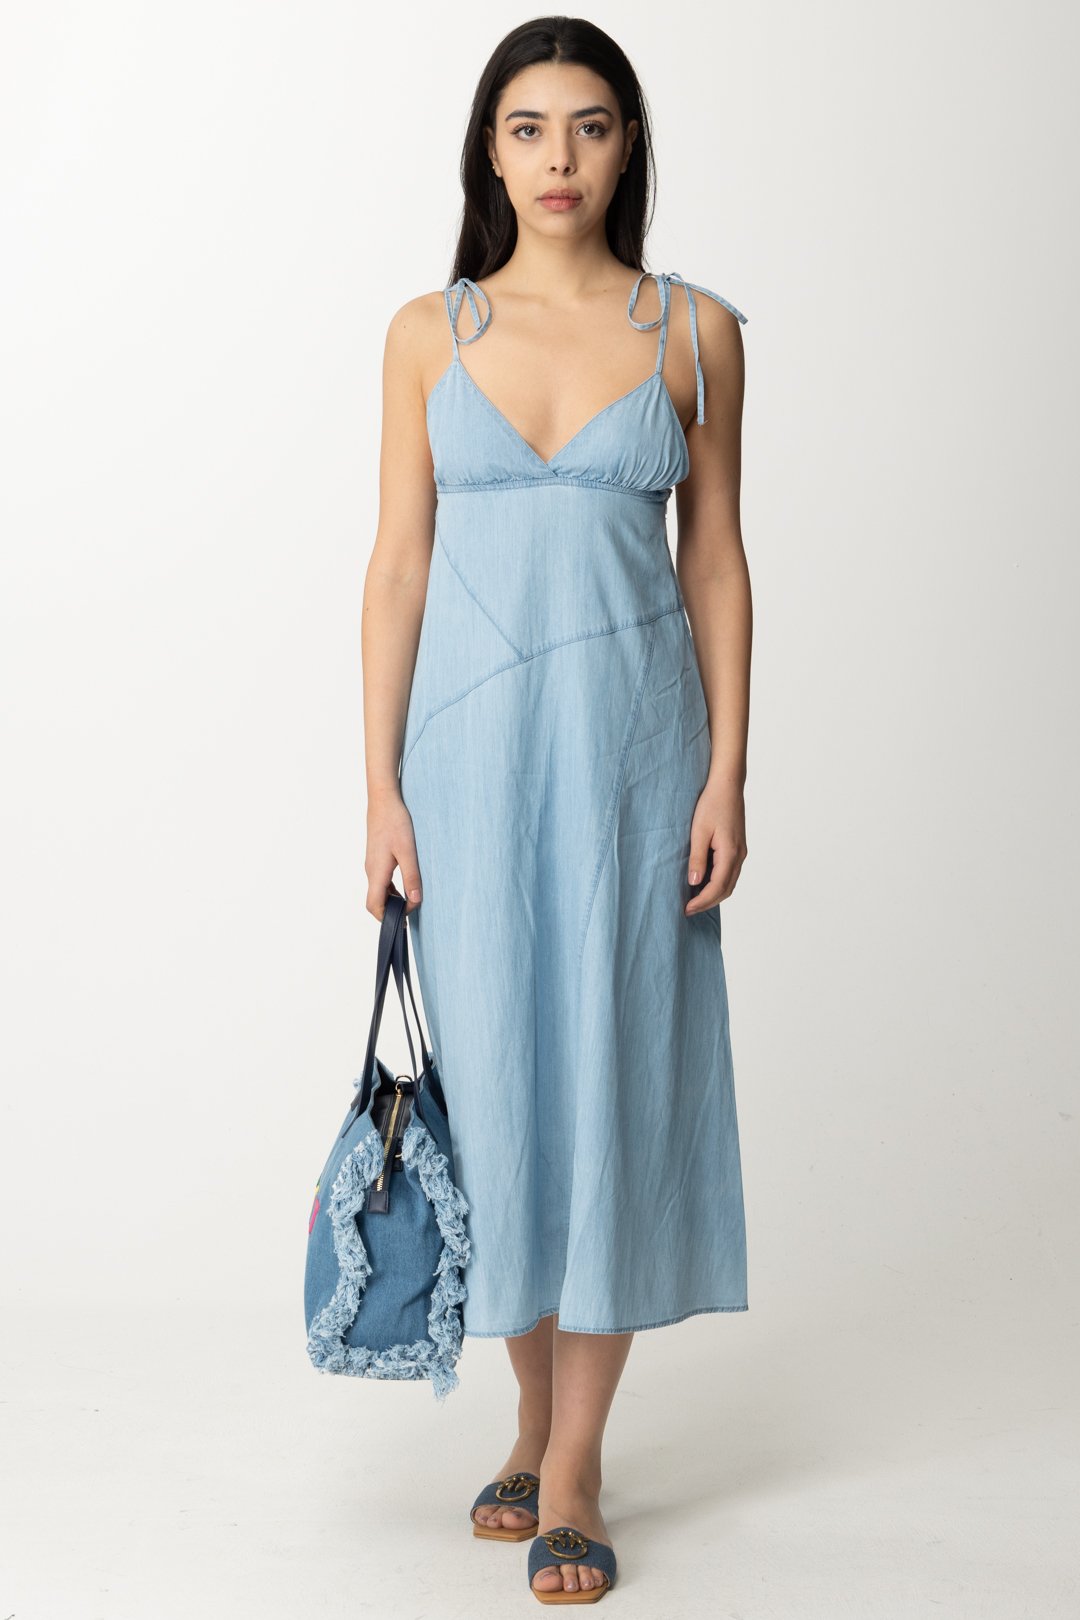 Podgląd: Replay Sukienka dżinsowa z wiązanymi ramiączkami Light blue